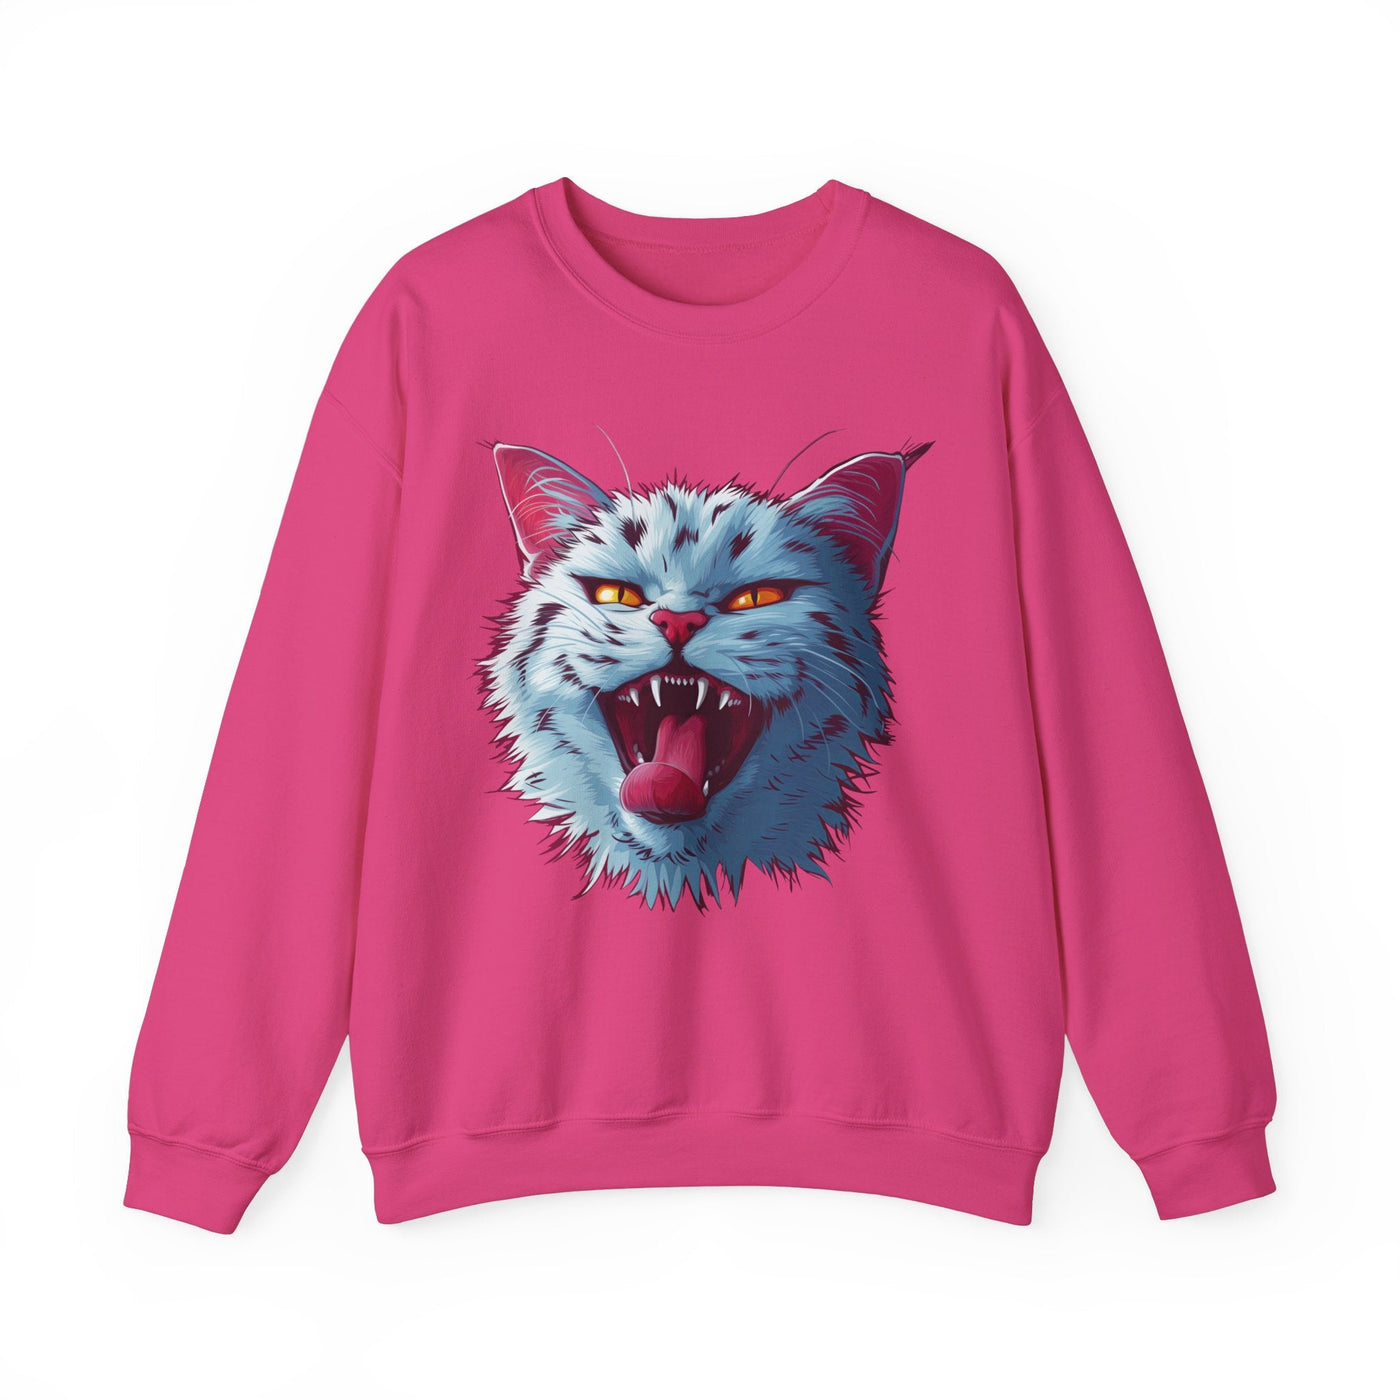 The Naughty Cat Sweatshirt